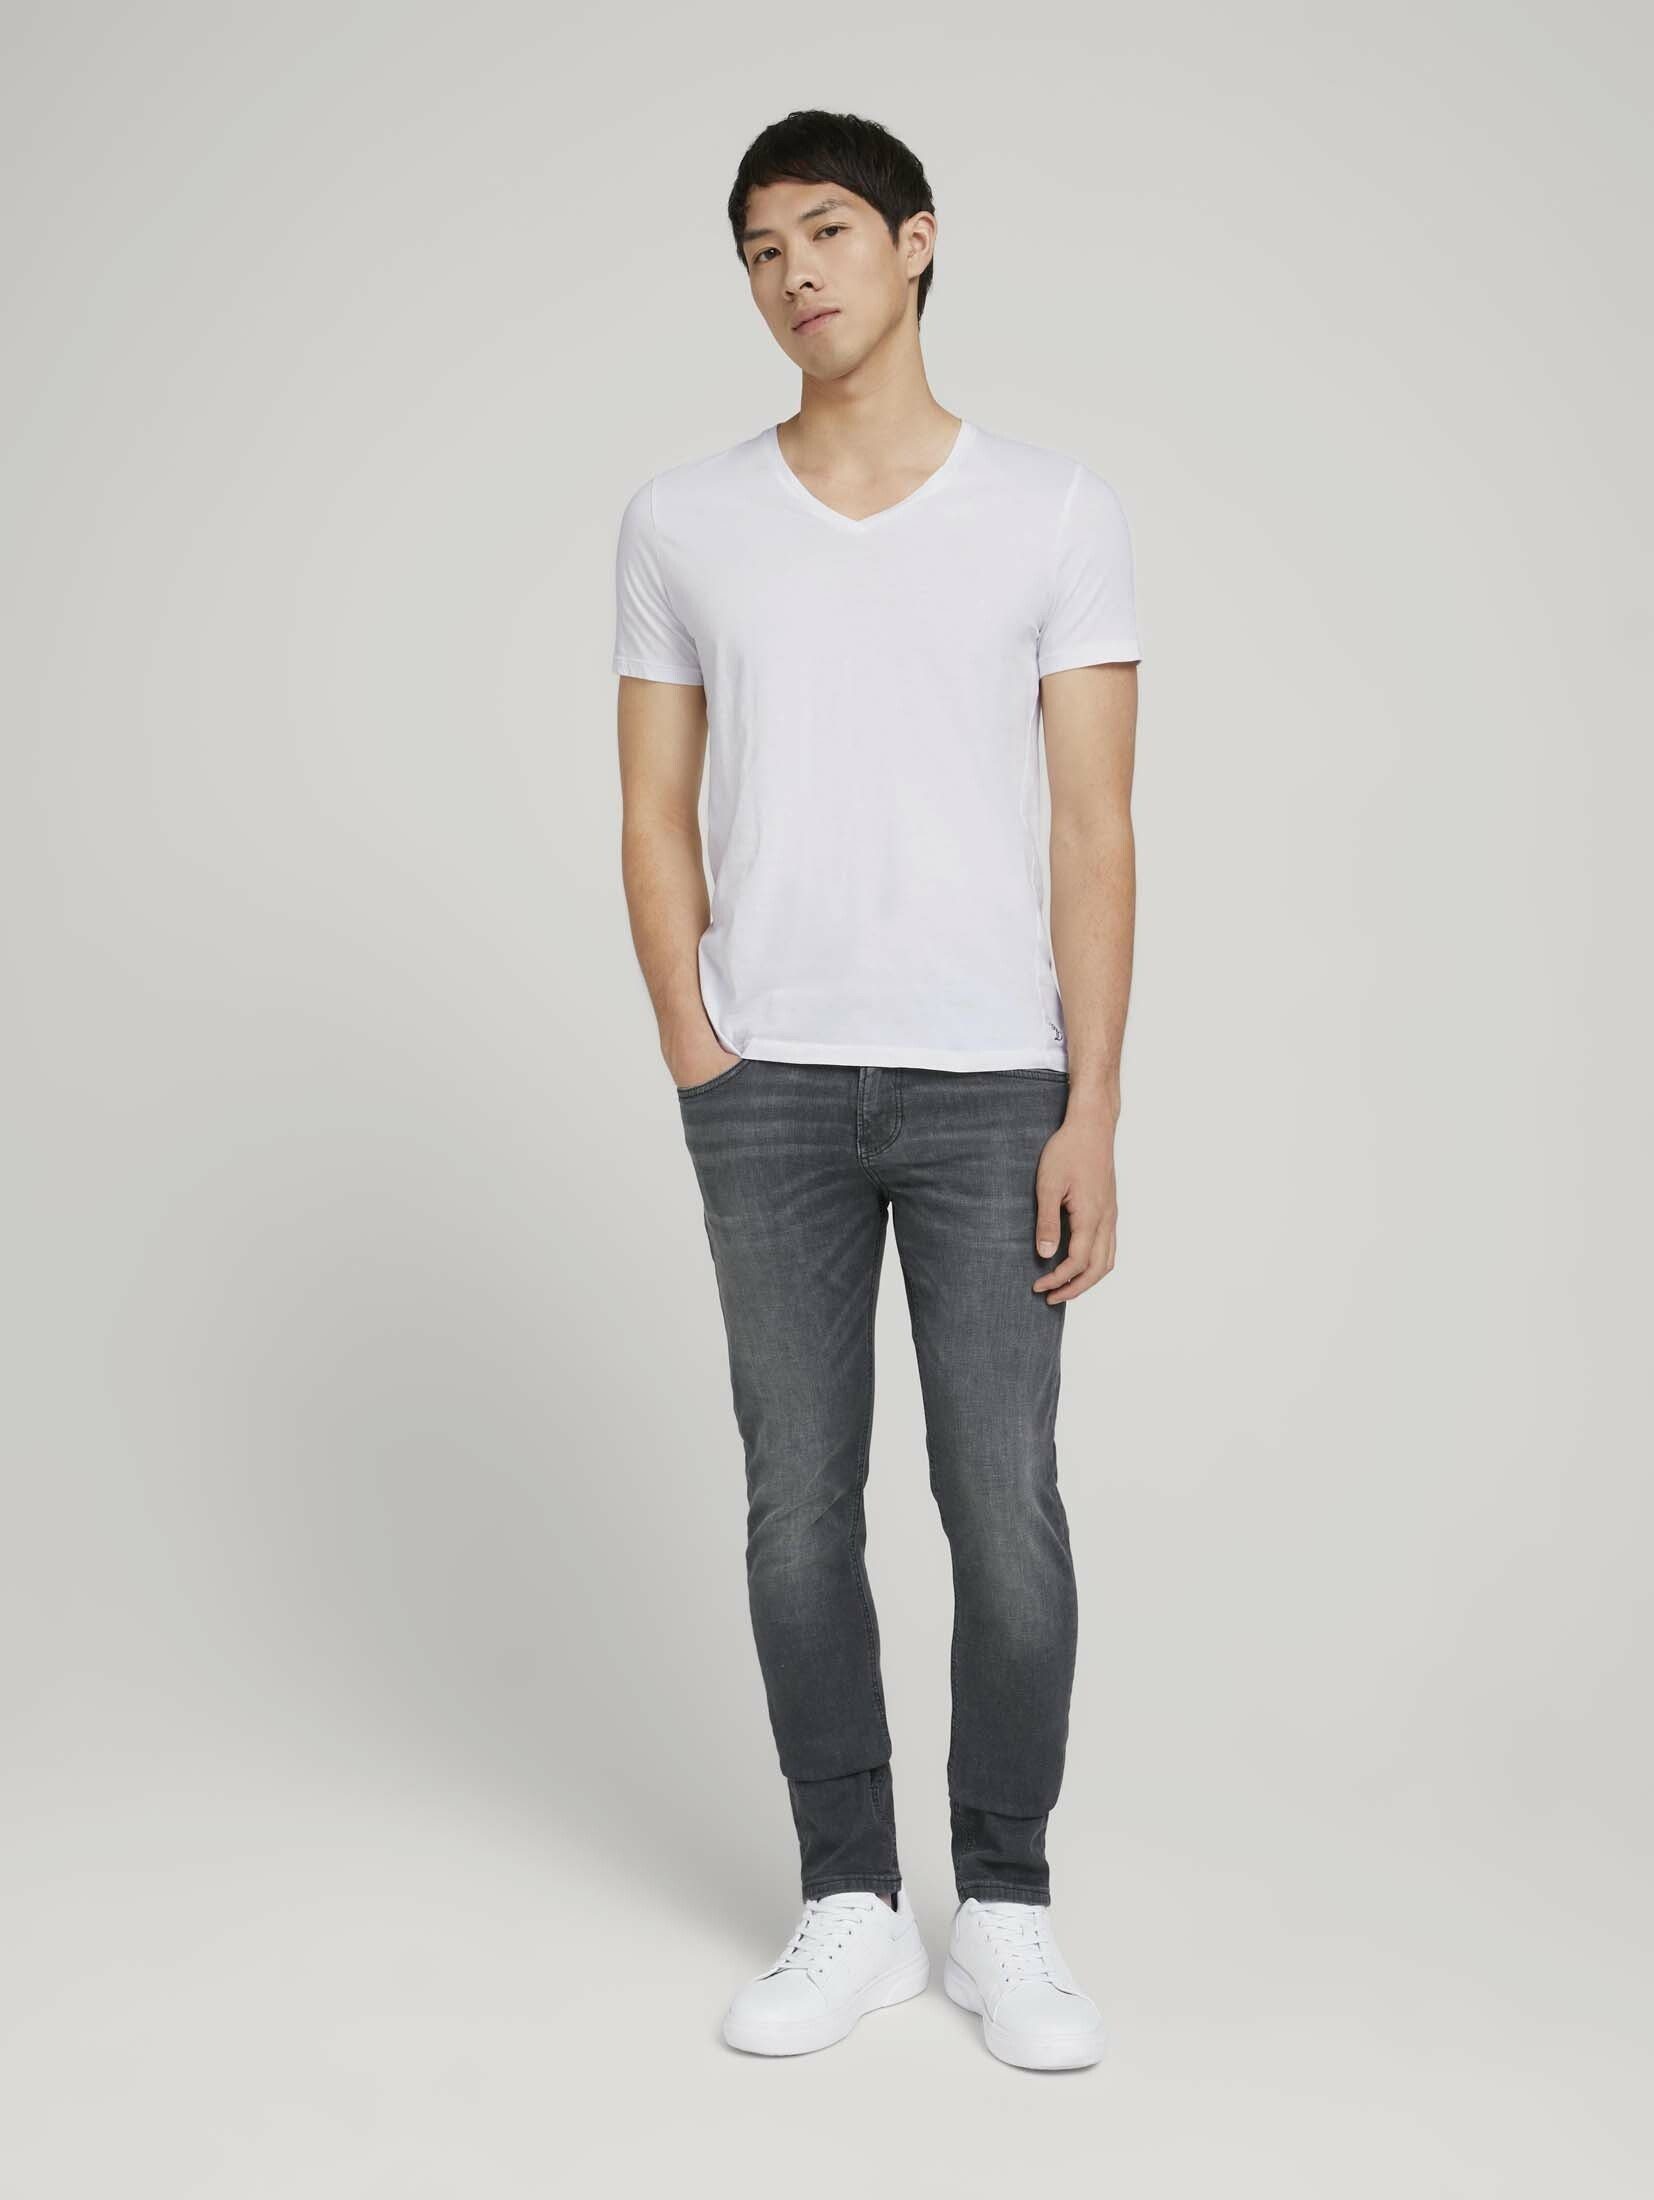 Piers Denim mit Slim Straight-Jeans TOM Bio-Baumwolle TAILOR Jeans